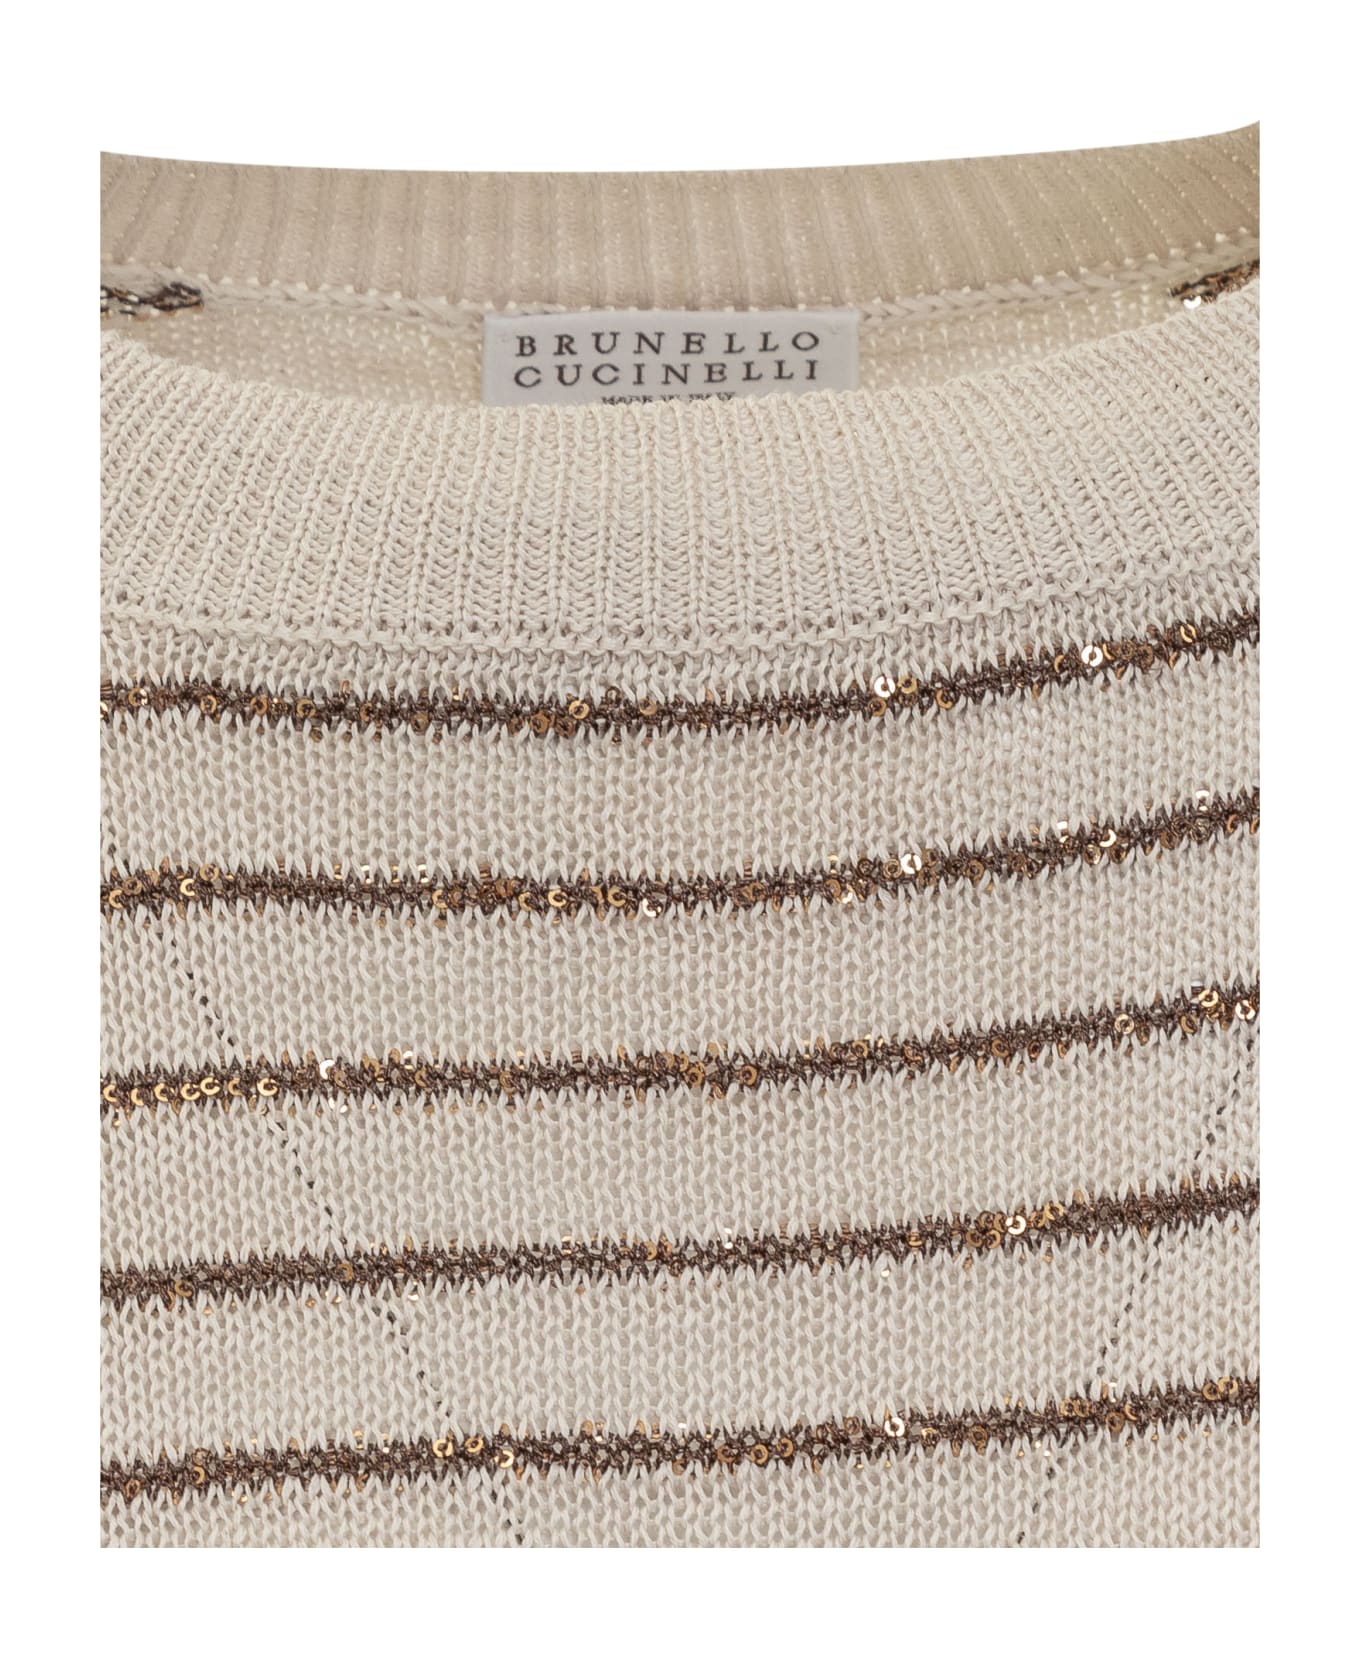 Brunello Cucinelli Dazzling Stripes Cotton Jersey - Cream/brown